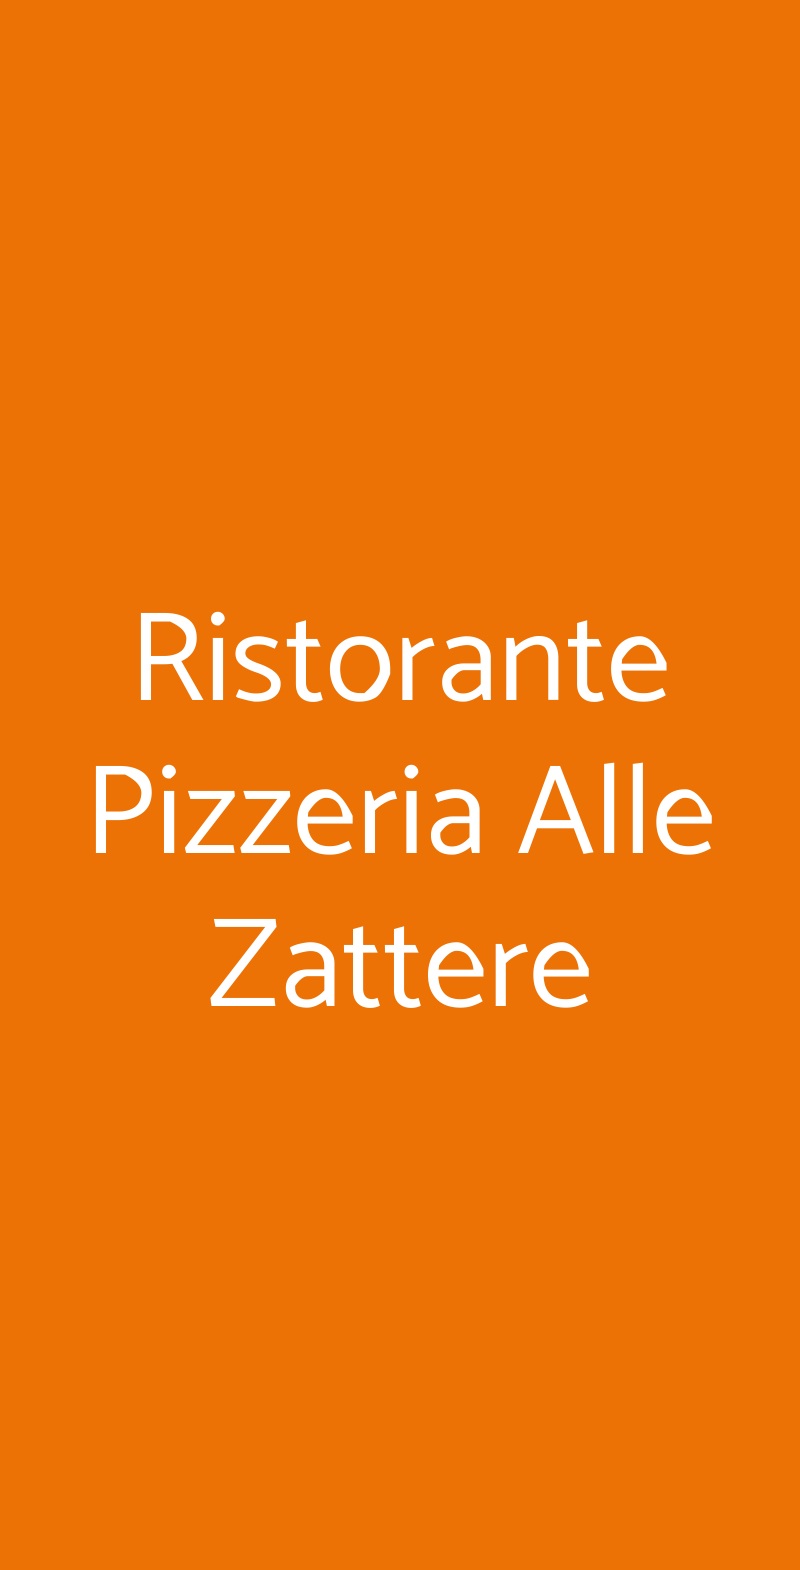 Ristorante Pizzeria Alle Zattere Venezia menù 1 pagina